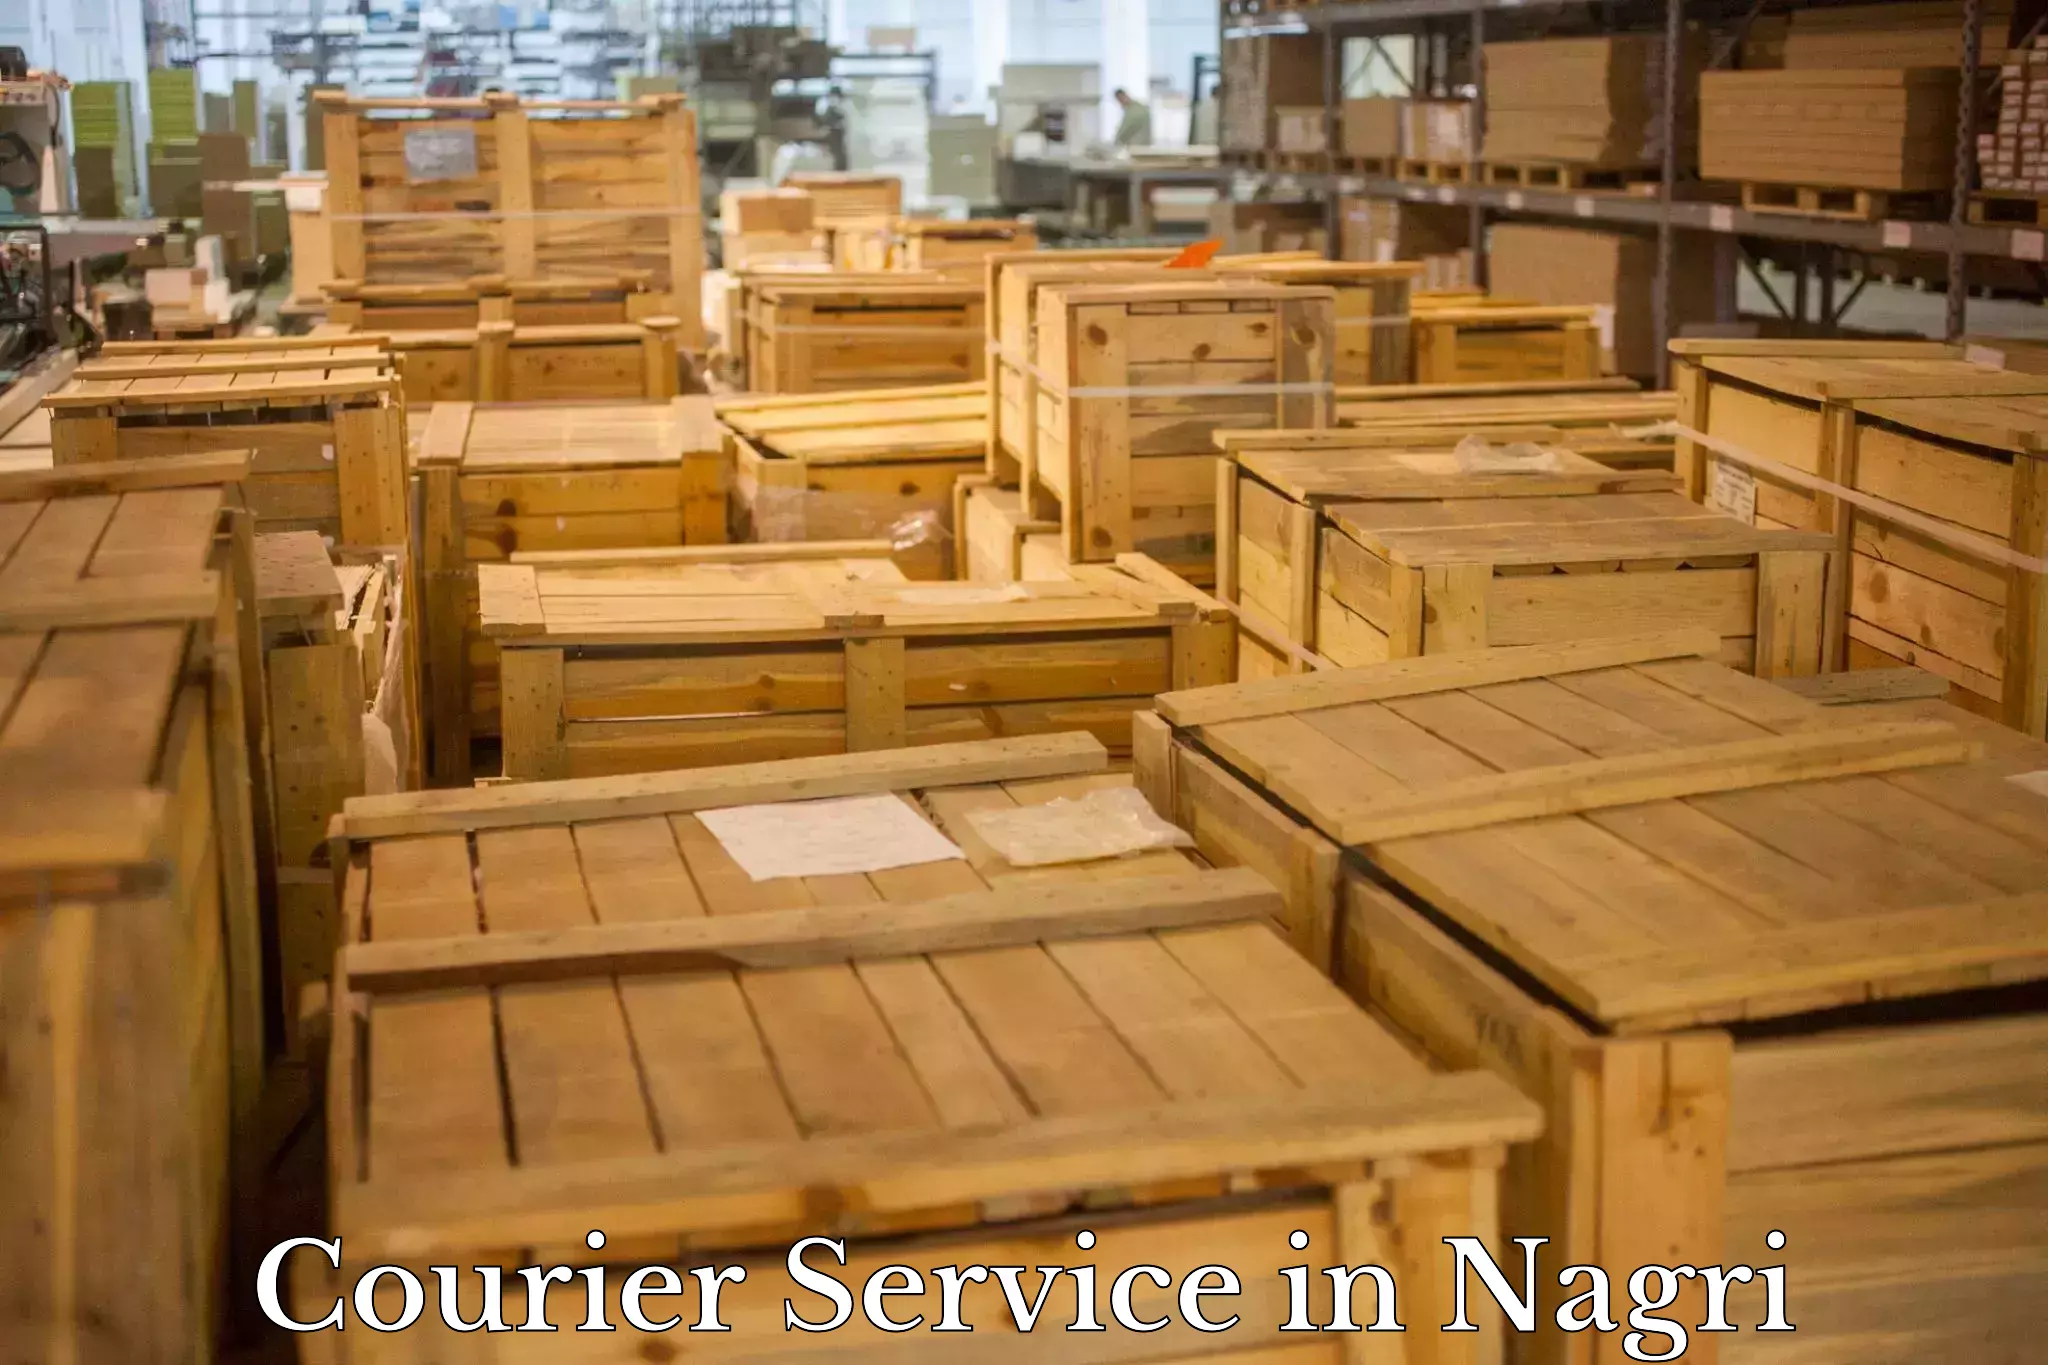 Global logistics network in Nagri